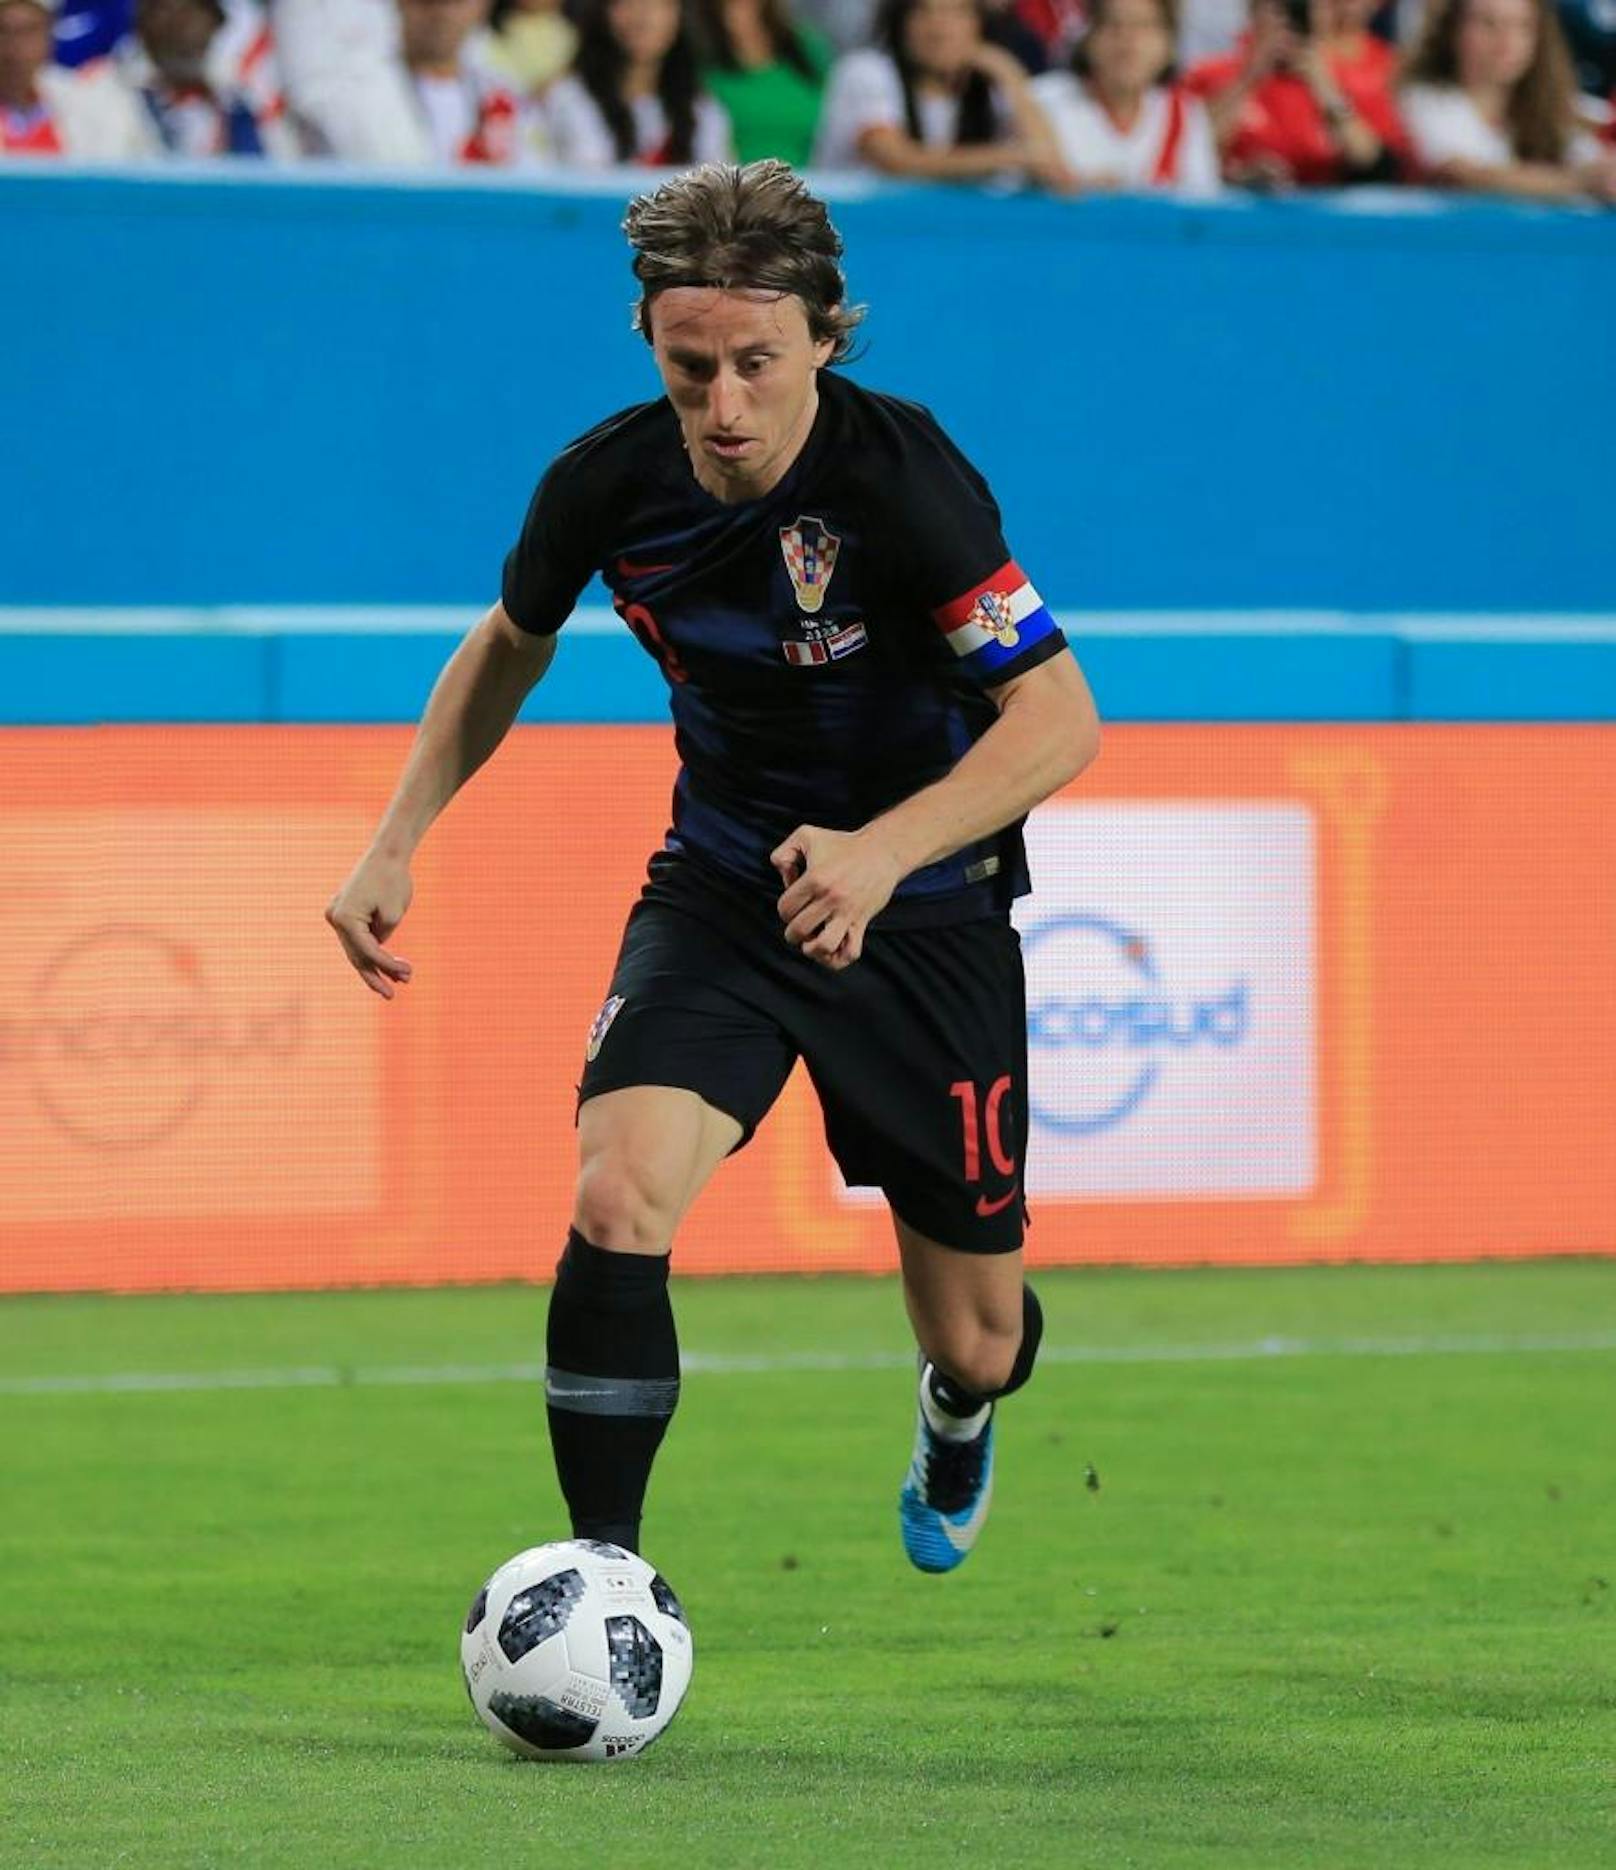 Luka Modric - Kroatien: Bei Weltmeisterschaften lief es für den kroatischen Spielmacher noch nicht nach Wunsch. Modric blieb in fünf Spielen ohne Torerfolg. Kroatien schied 2014 in der Vorrunde aus.